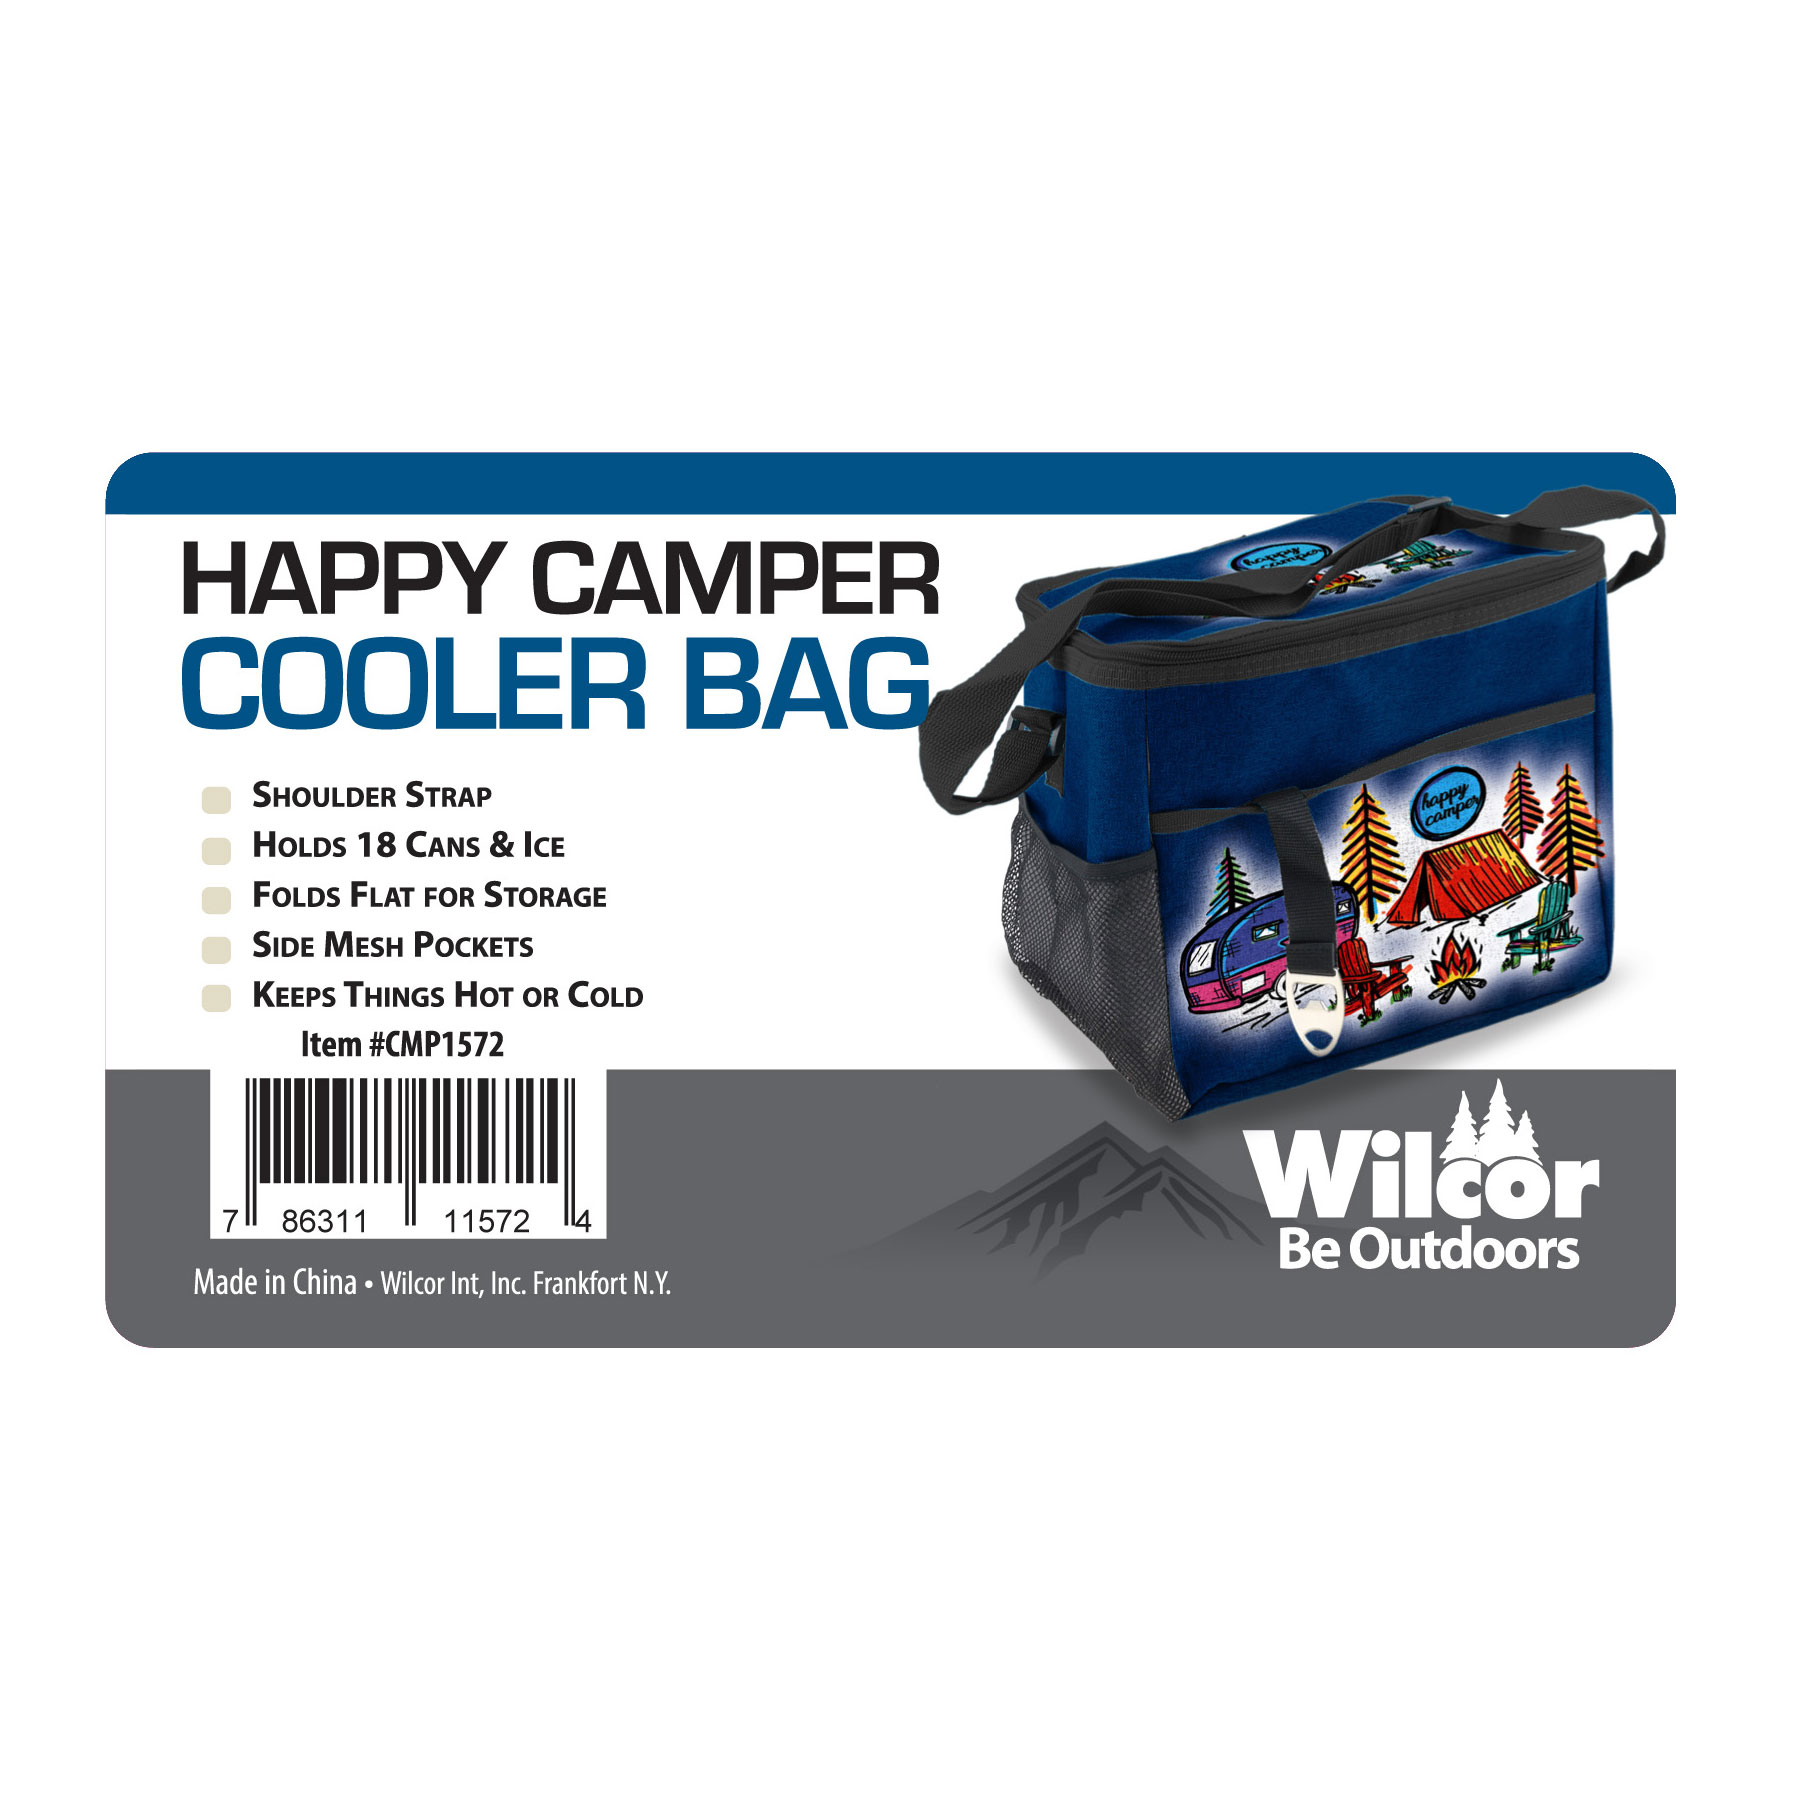 https://wilcor.net/productimages/cmp1572_happy_camper_scene_cooler_bag_tag_back.jpg